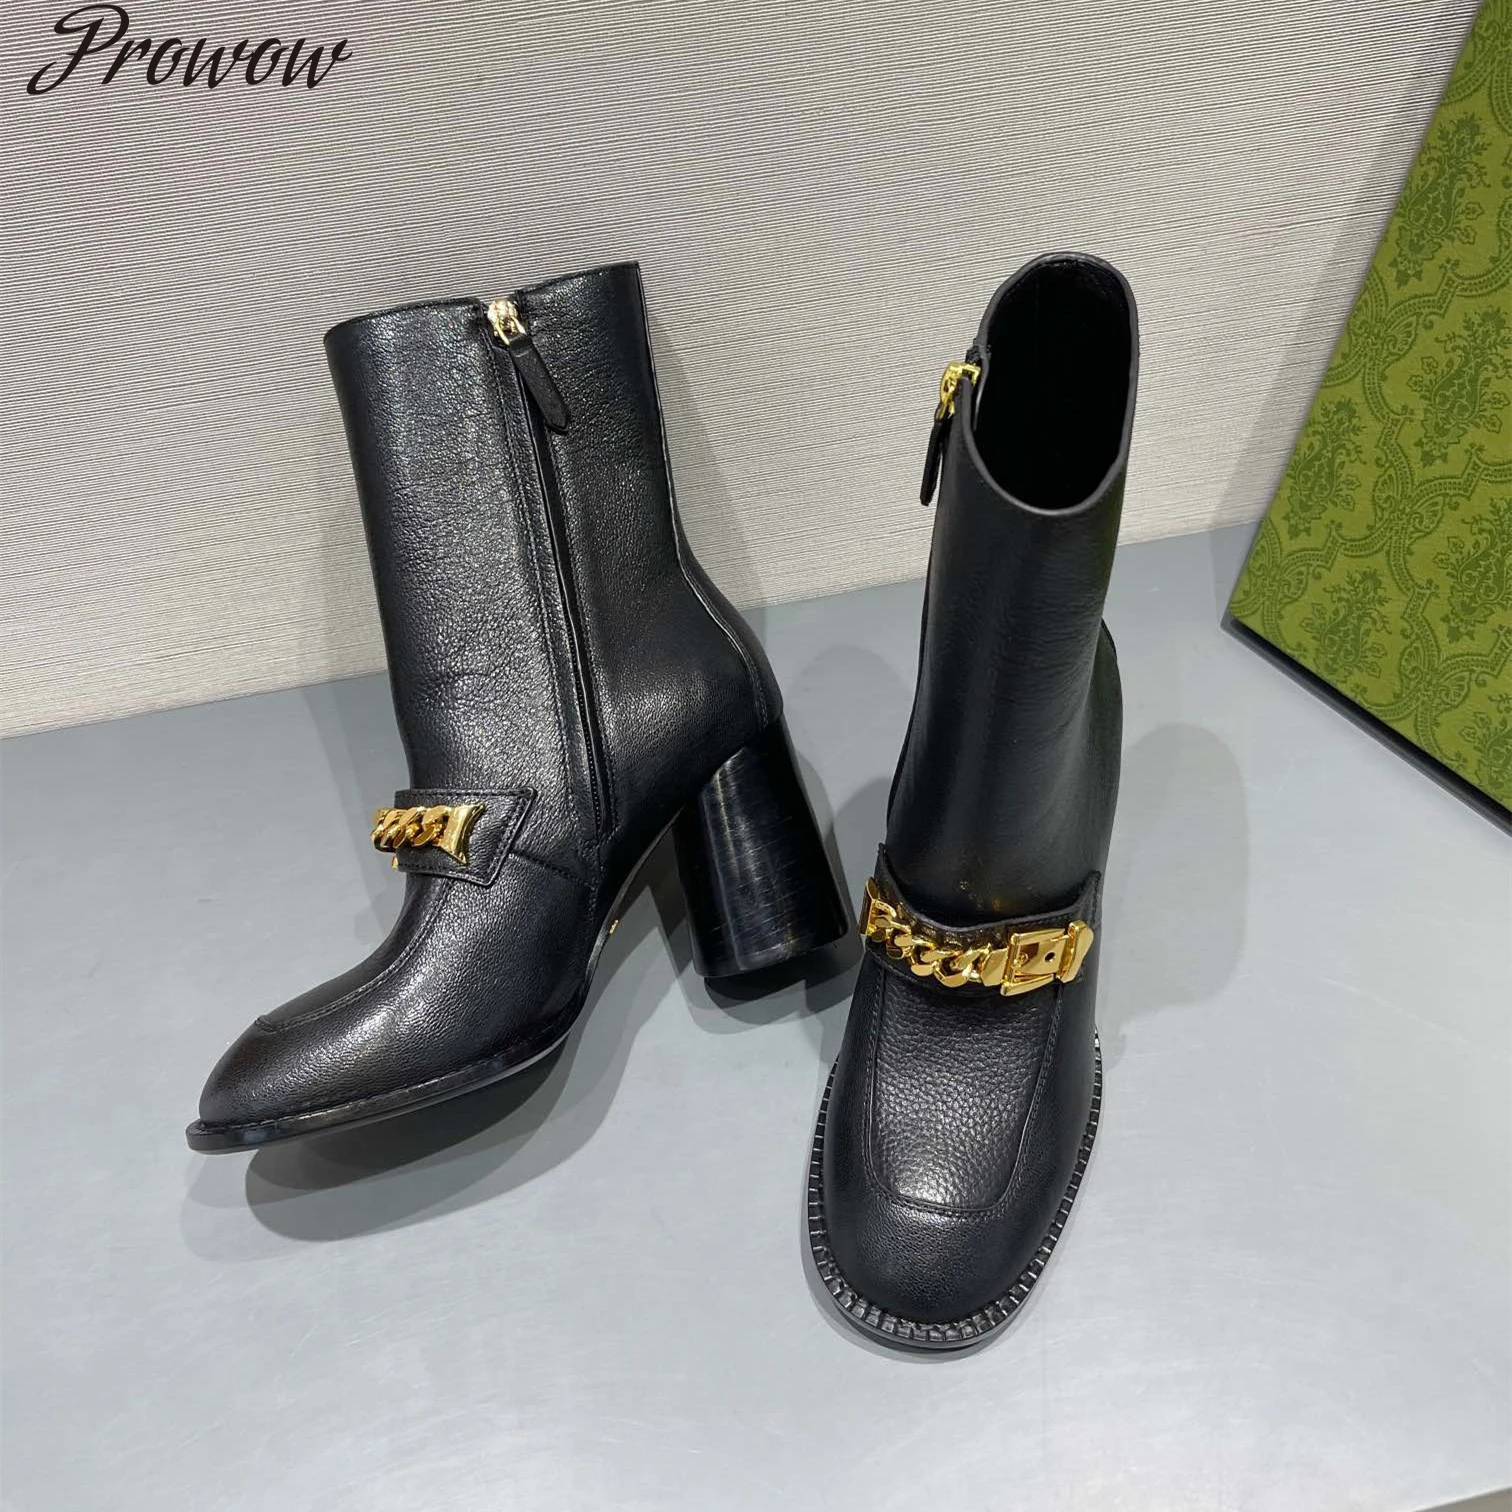 

Женские ботинки до середины икры Prowow, дизайнерские ботинки из натуральной кожи с круглым носком и металлическим украшением